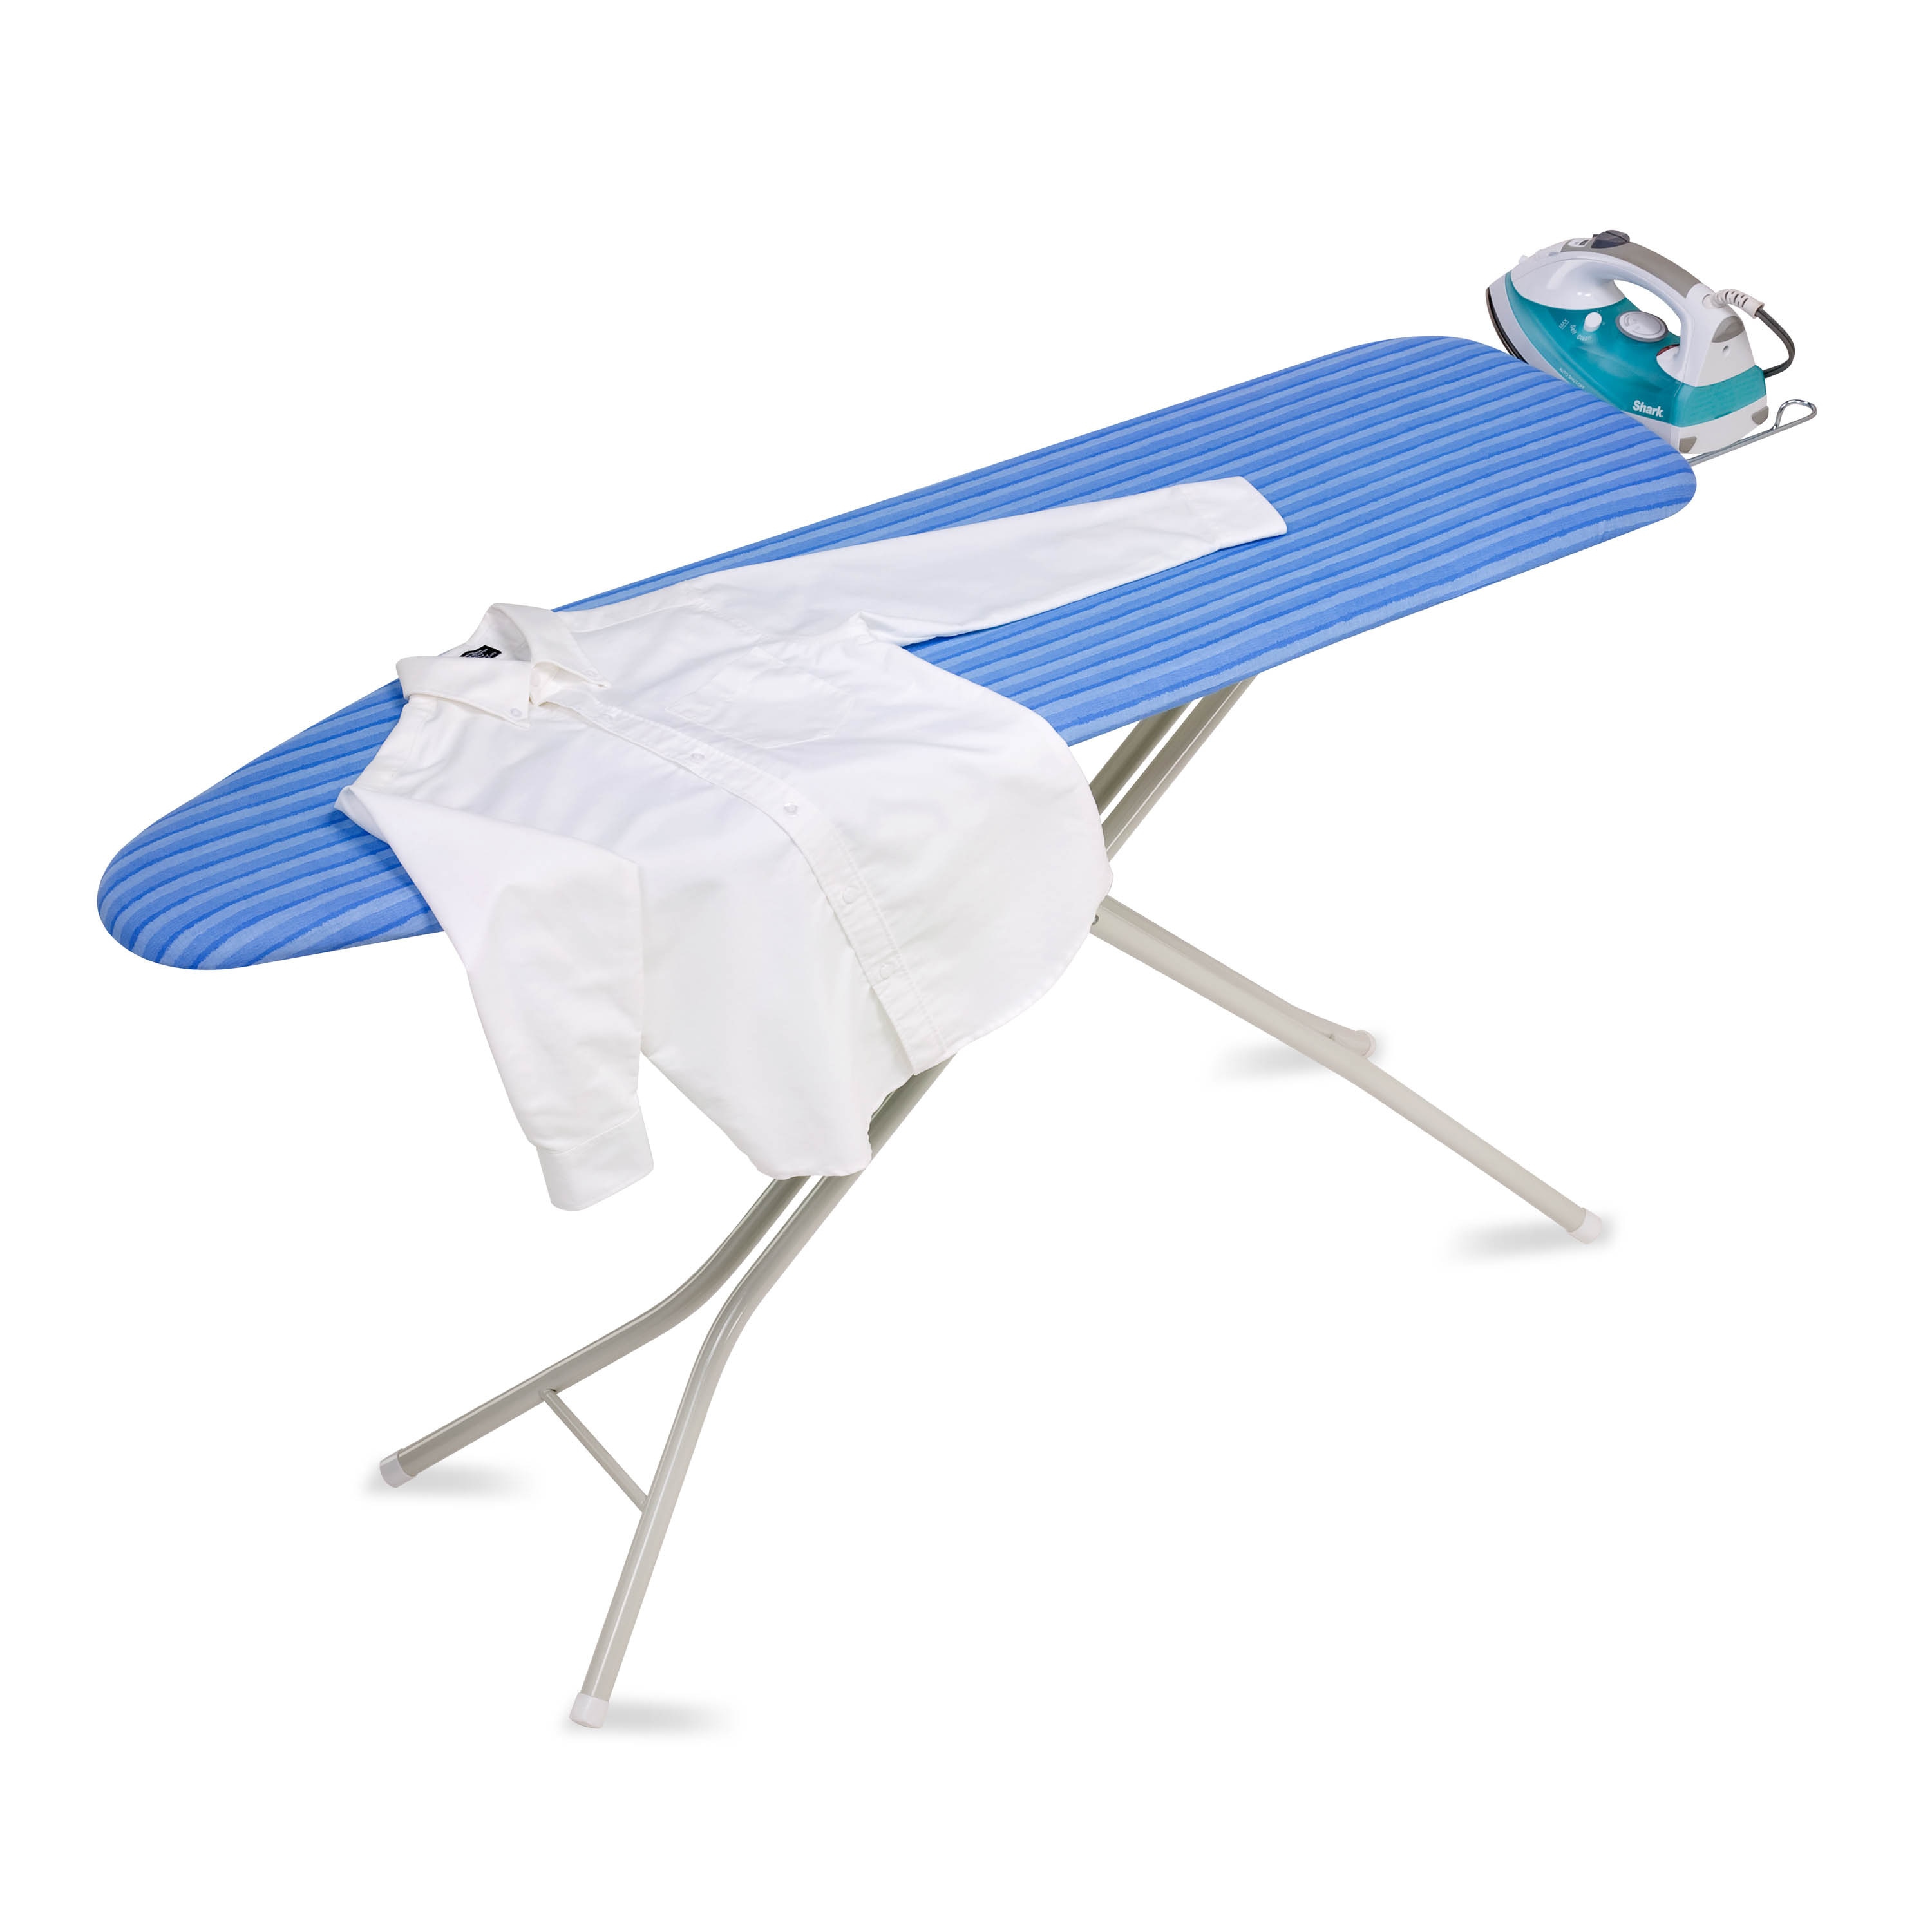 Bohin Mini Ironing Board with Blue Fabric